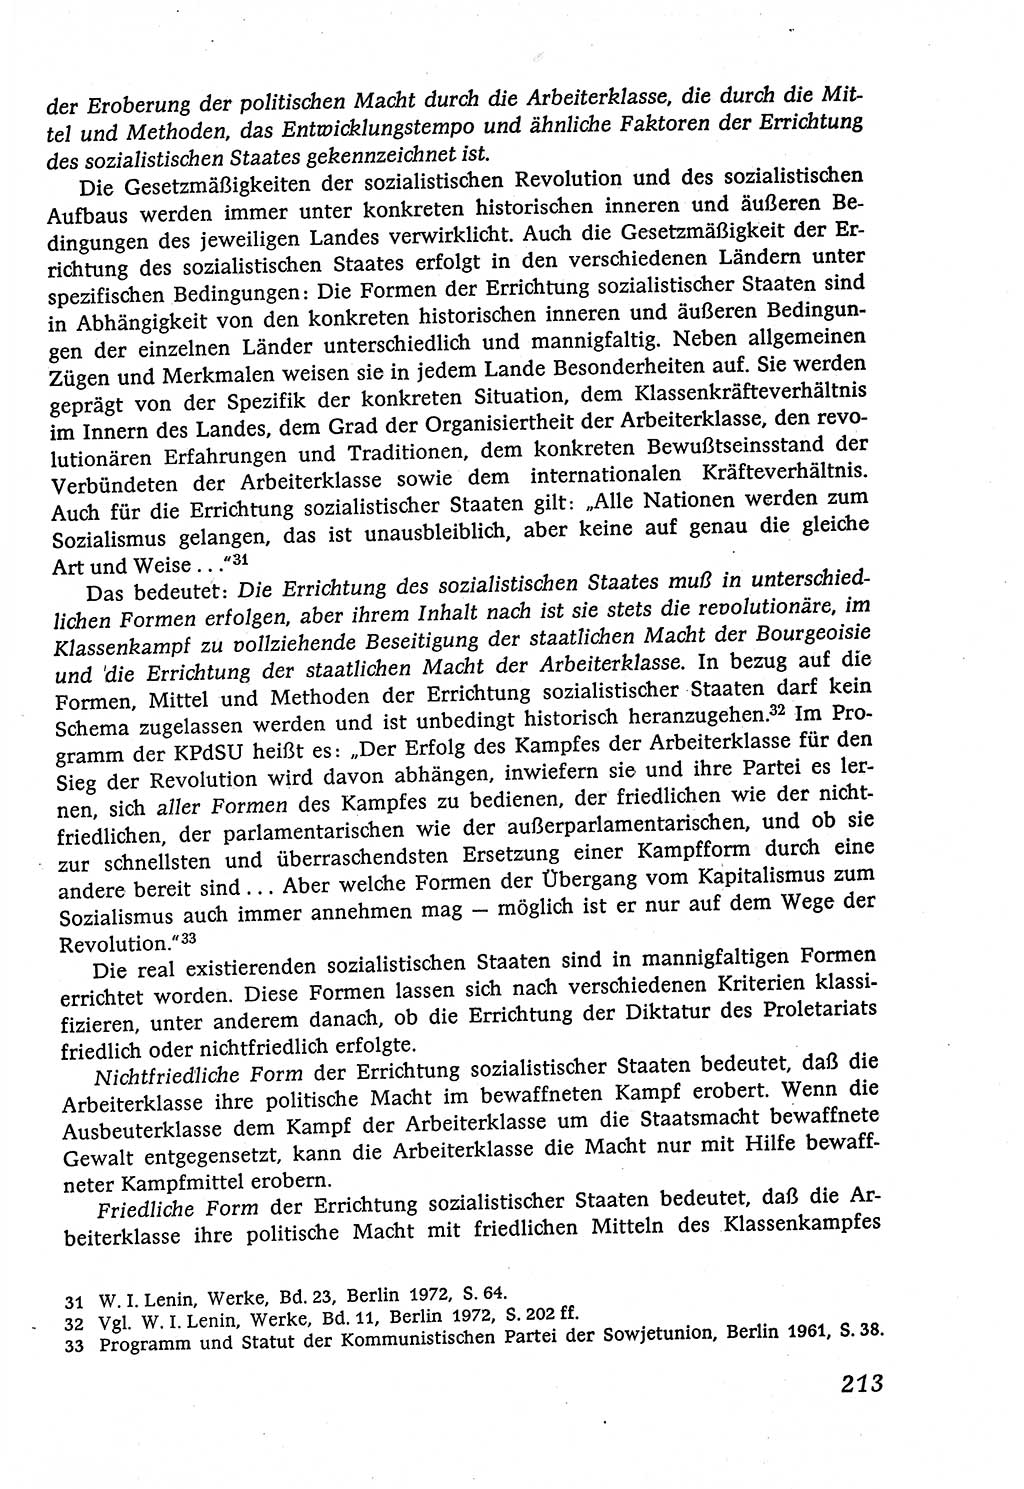 Marxistisch-leninistische (ML) Staats- und Rechtstheorie [Deutsche Demokratische Republik (DDR)], Lehrbuch 1980, Seite 213 (ML St.-R.-Th. DDR Lb. 1980, S. 213)